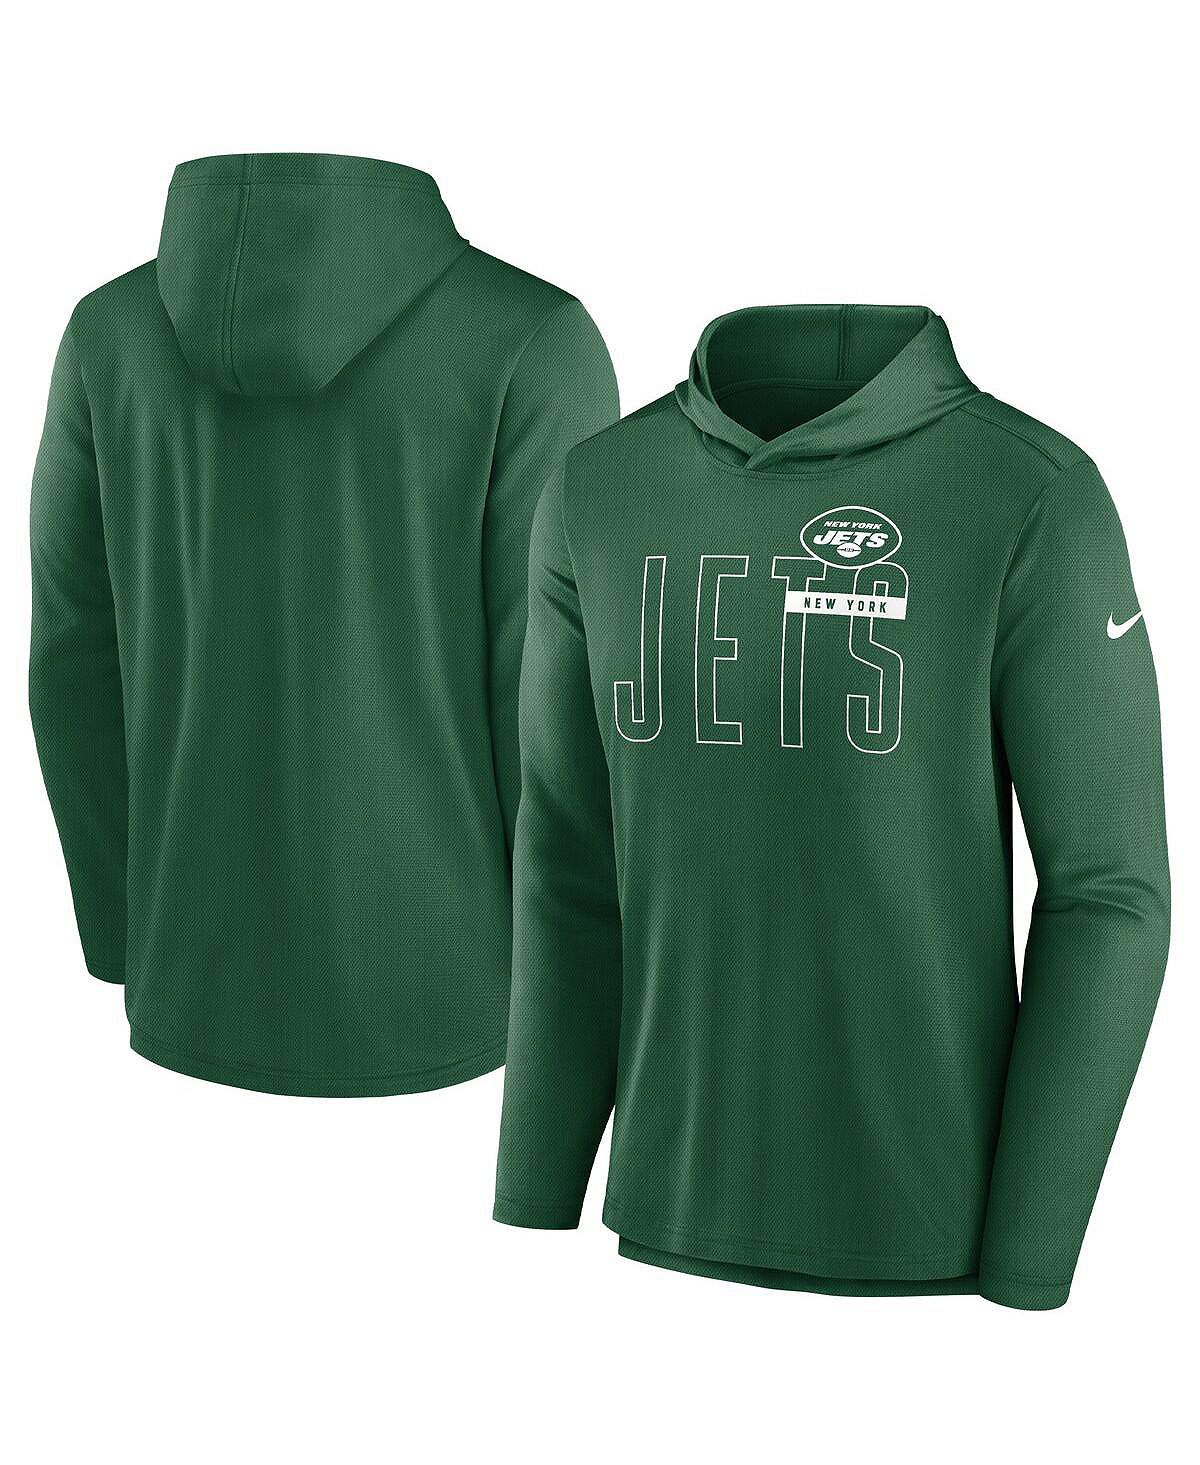 Мужская зеленая толстовка с капюшоном new york jets performance team Nike, зеленый